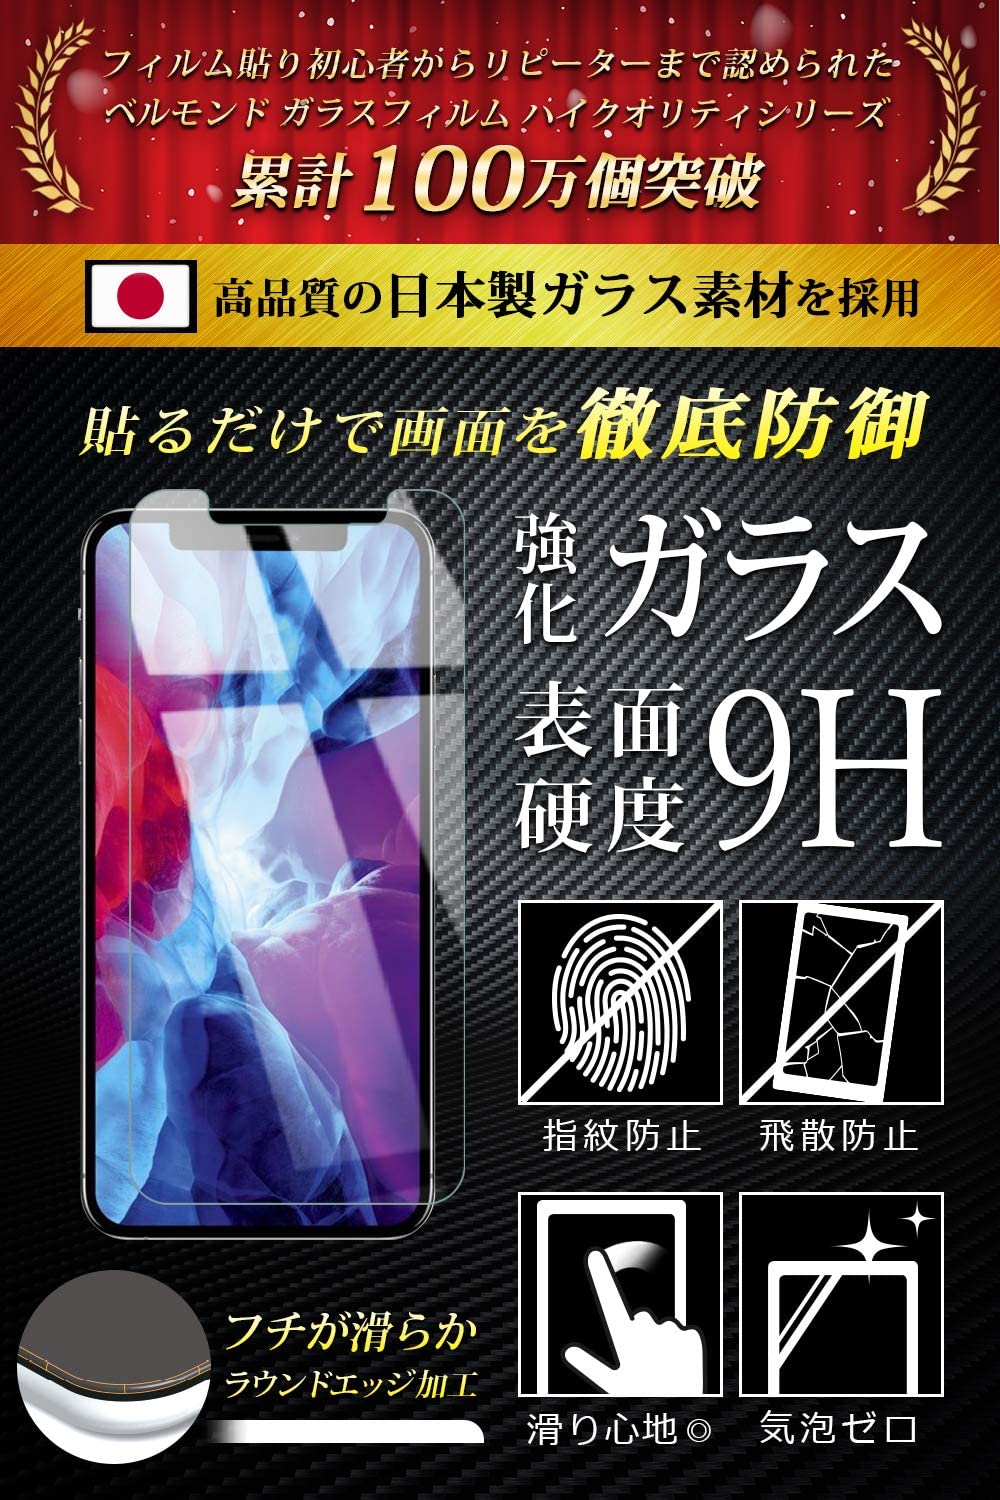 【ガイド枠付き】 iPhone 12 / iPhone 12 Pro (6.1インチ) 透明 ガラスフィルム 2枚セット 日本製素材 強化ガラス アイフォン 保護フィルム 【BELLEMOND(ベルモンド)】 iPhone12/iPhone12Pro 6.1 GCL 2S GF B0137 YFF